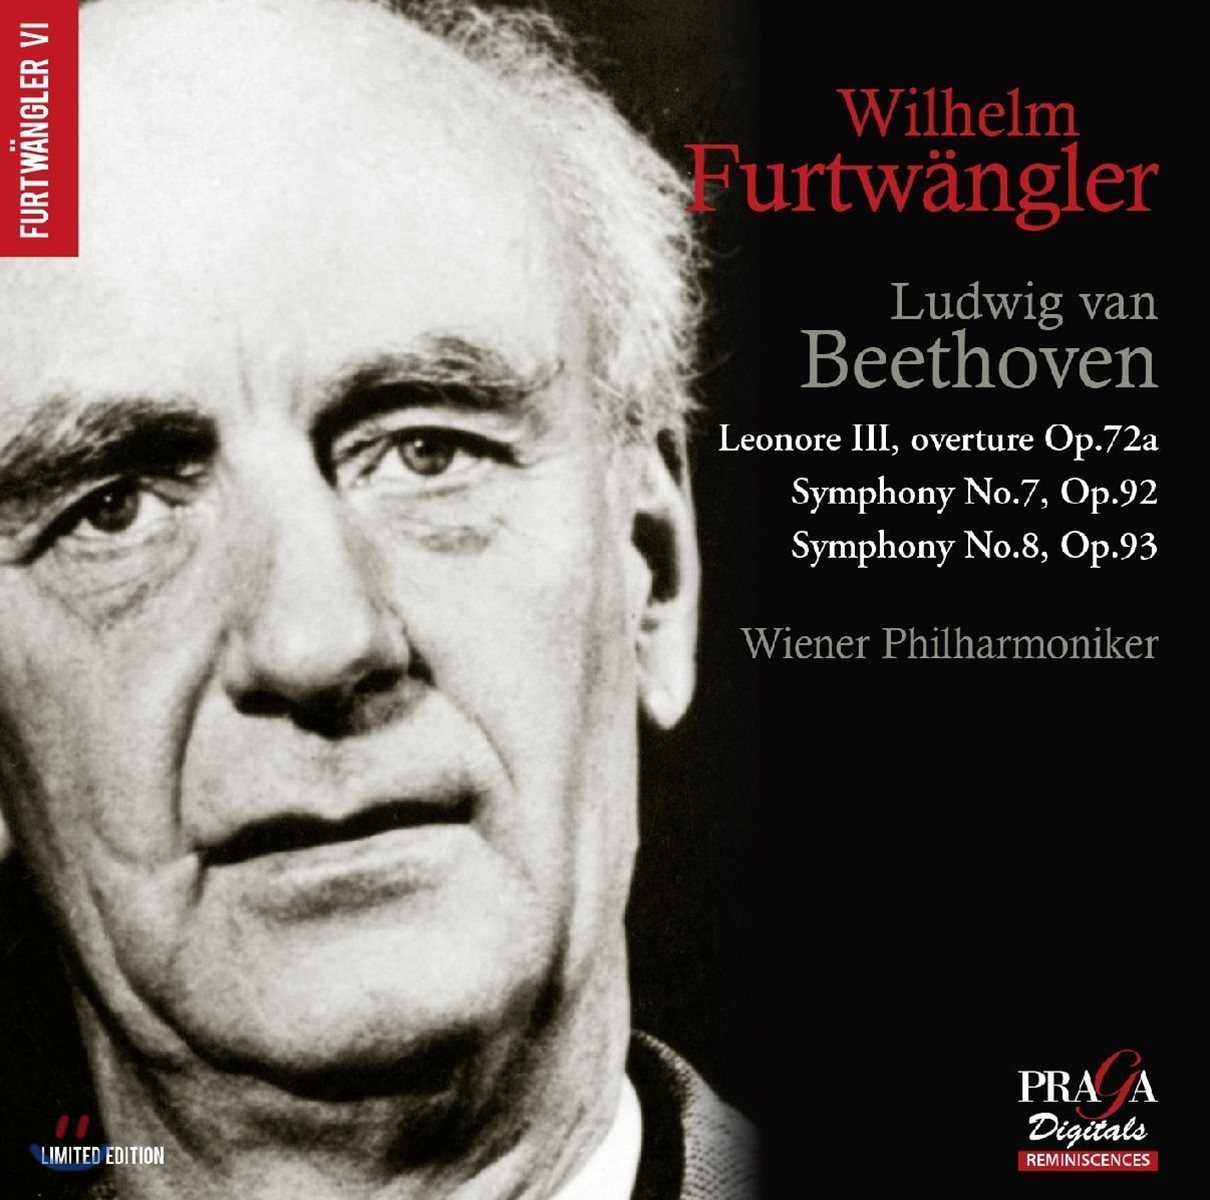 Wilhelm Furtwangler 베토벤: 레오노레 서곡 3번, 교향곡 7 &amp; 8번 - 빌헬름 푸르트뱅글러, 빈 필하모닉 (Beethoven: Leonore Op.72a, Symphonies Op.92 &amp; Op93)